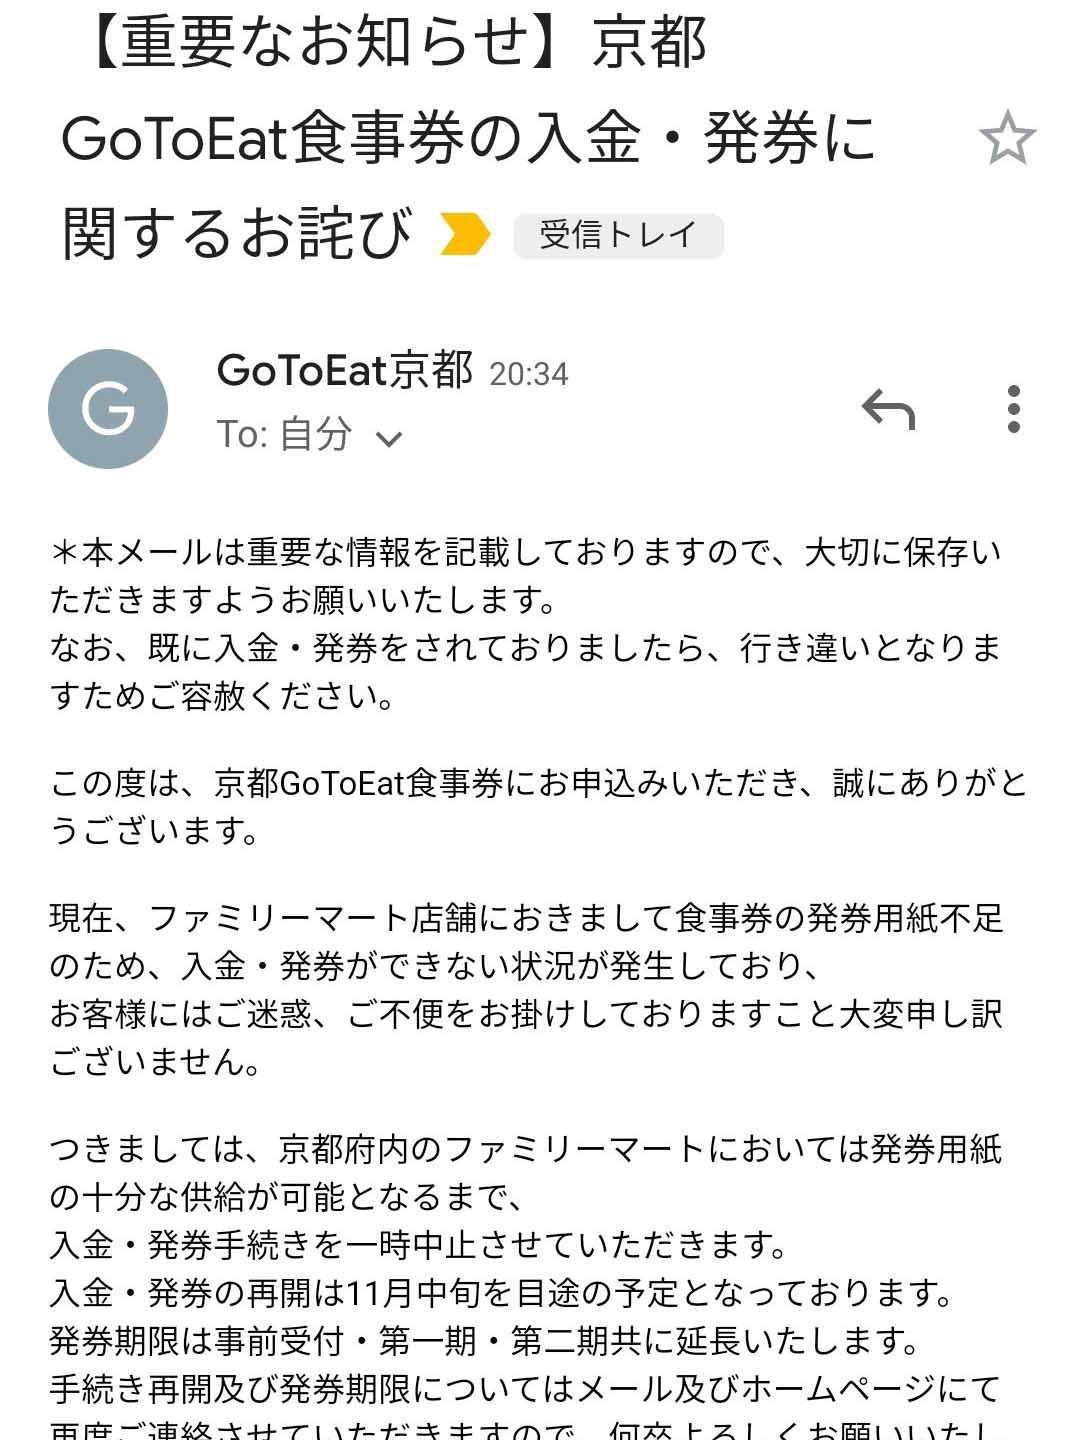 GoToEat京都のお詫び